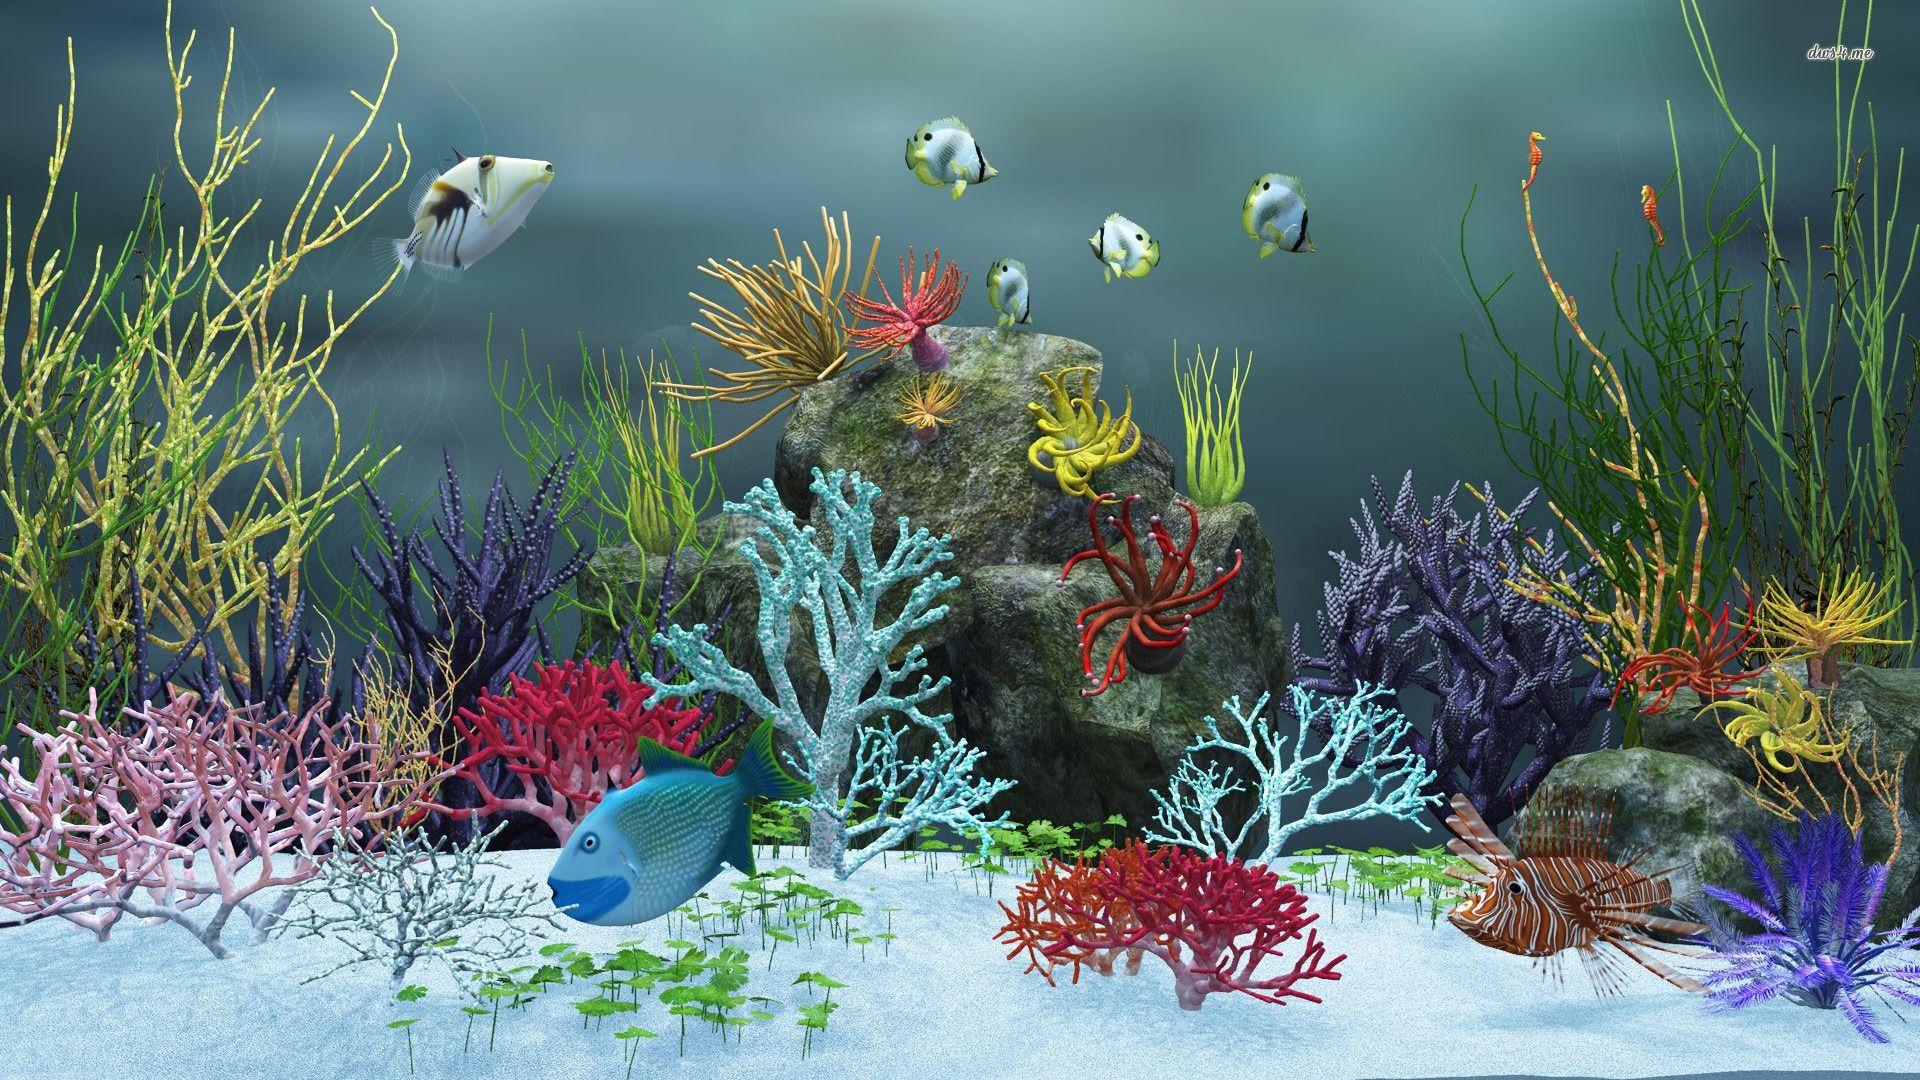 Aquarium wallpaper - Digital Art wallpapers